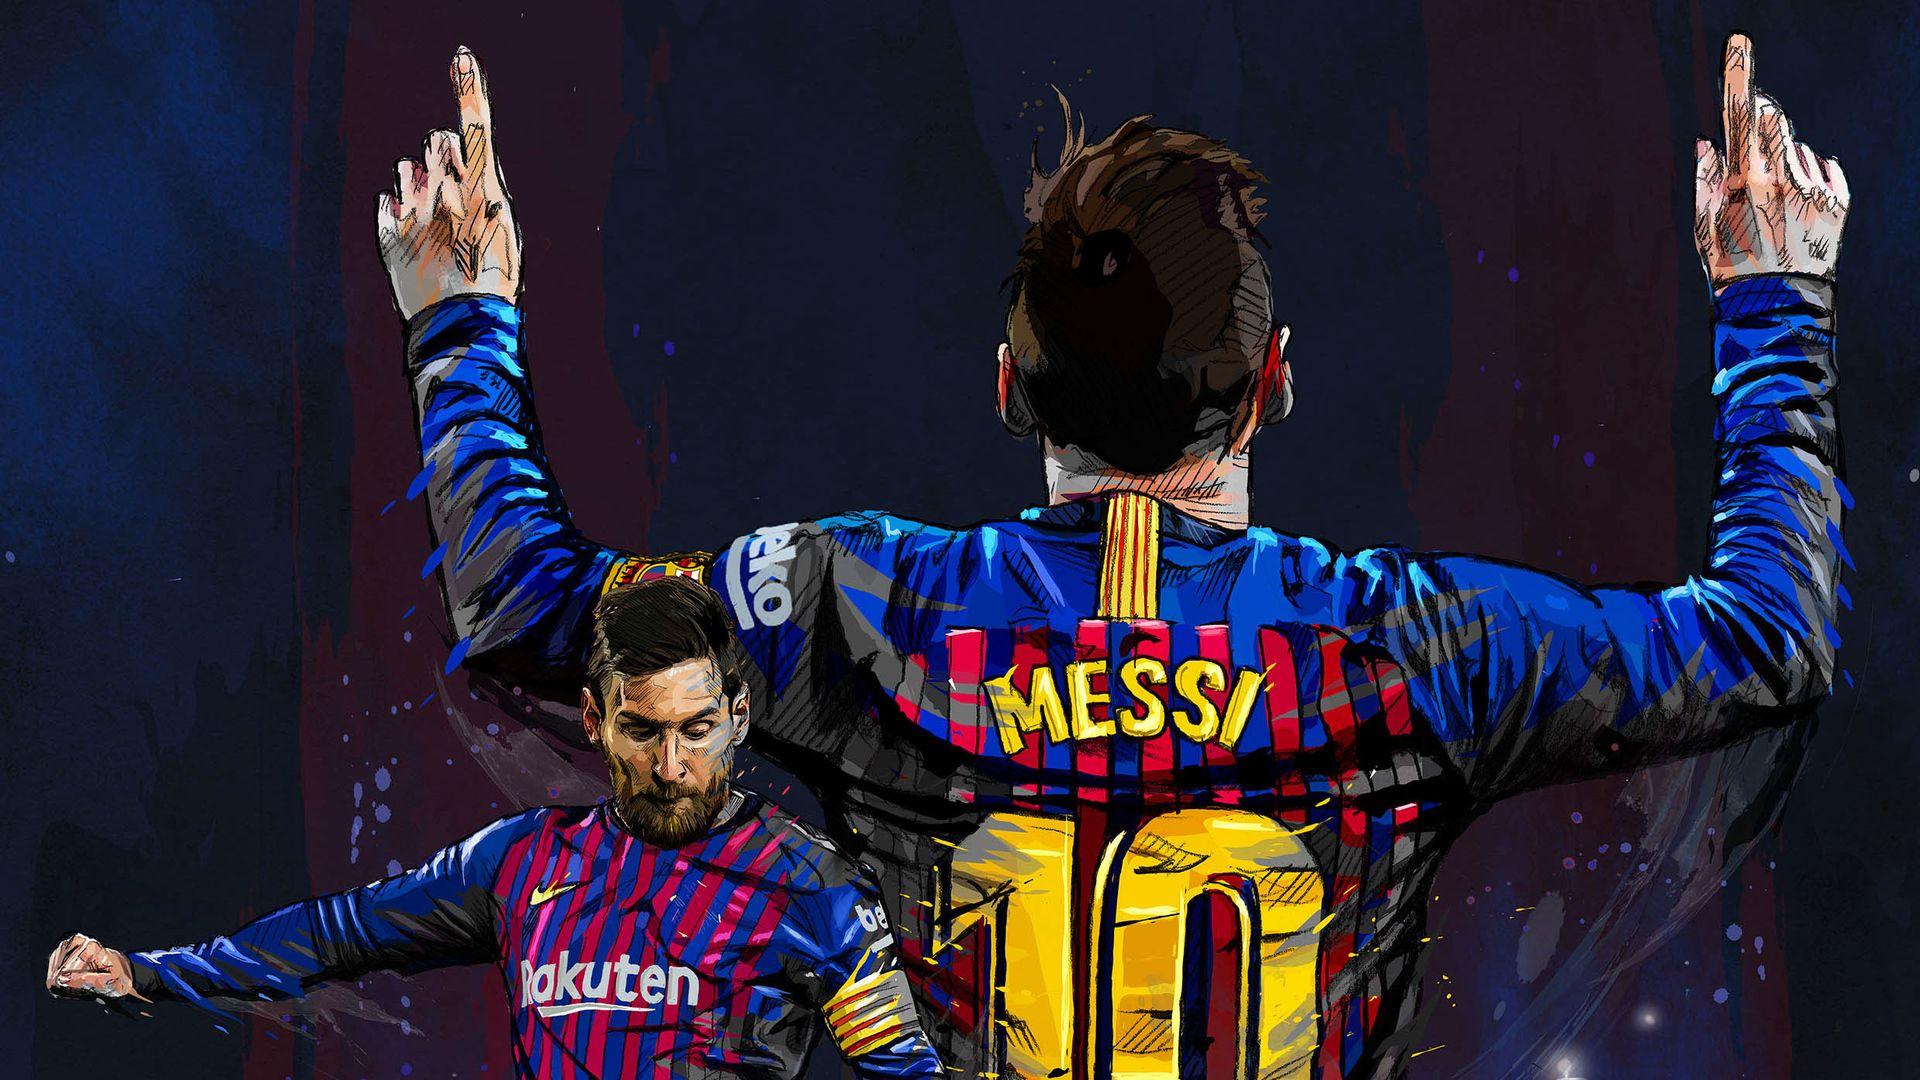 Messi laptop background chắc chắn sẽ làm cho màn hình của bạn trở nên hoàn hảo hơn. Nhìn vào hình nền này, bạn sẽ được nhấn mạnh on sự phóng khoáng và nhanh nhẹn cùng với sức mạnh vô song của siêu sao bóng đá này, không chỉ khiến bạn cảm thấy hớn hở mà còn truyền tải những giá trị đích thực của bóng đá.